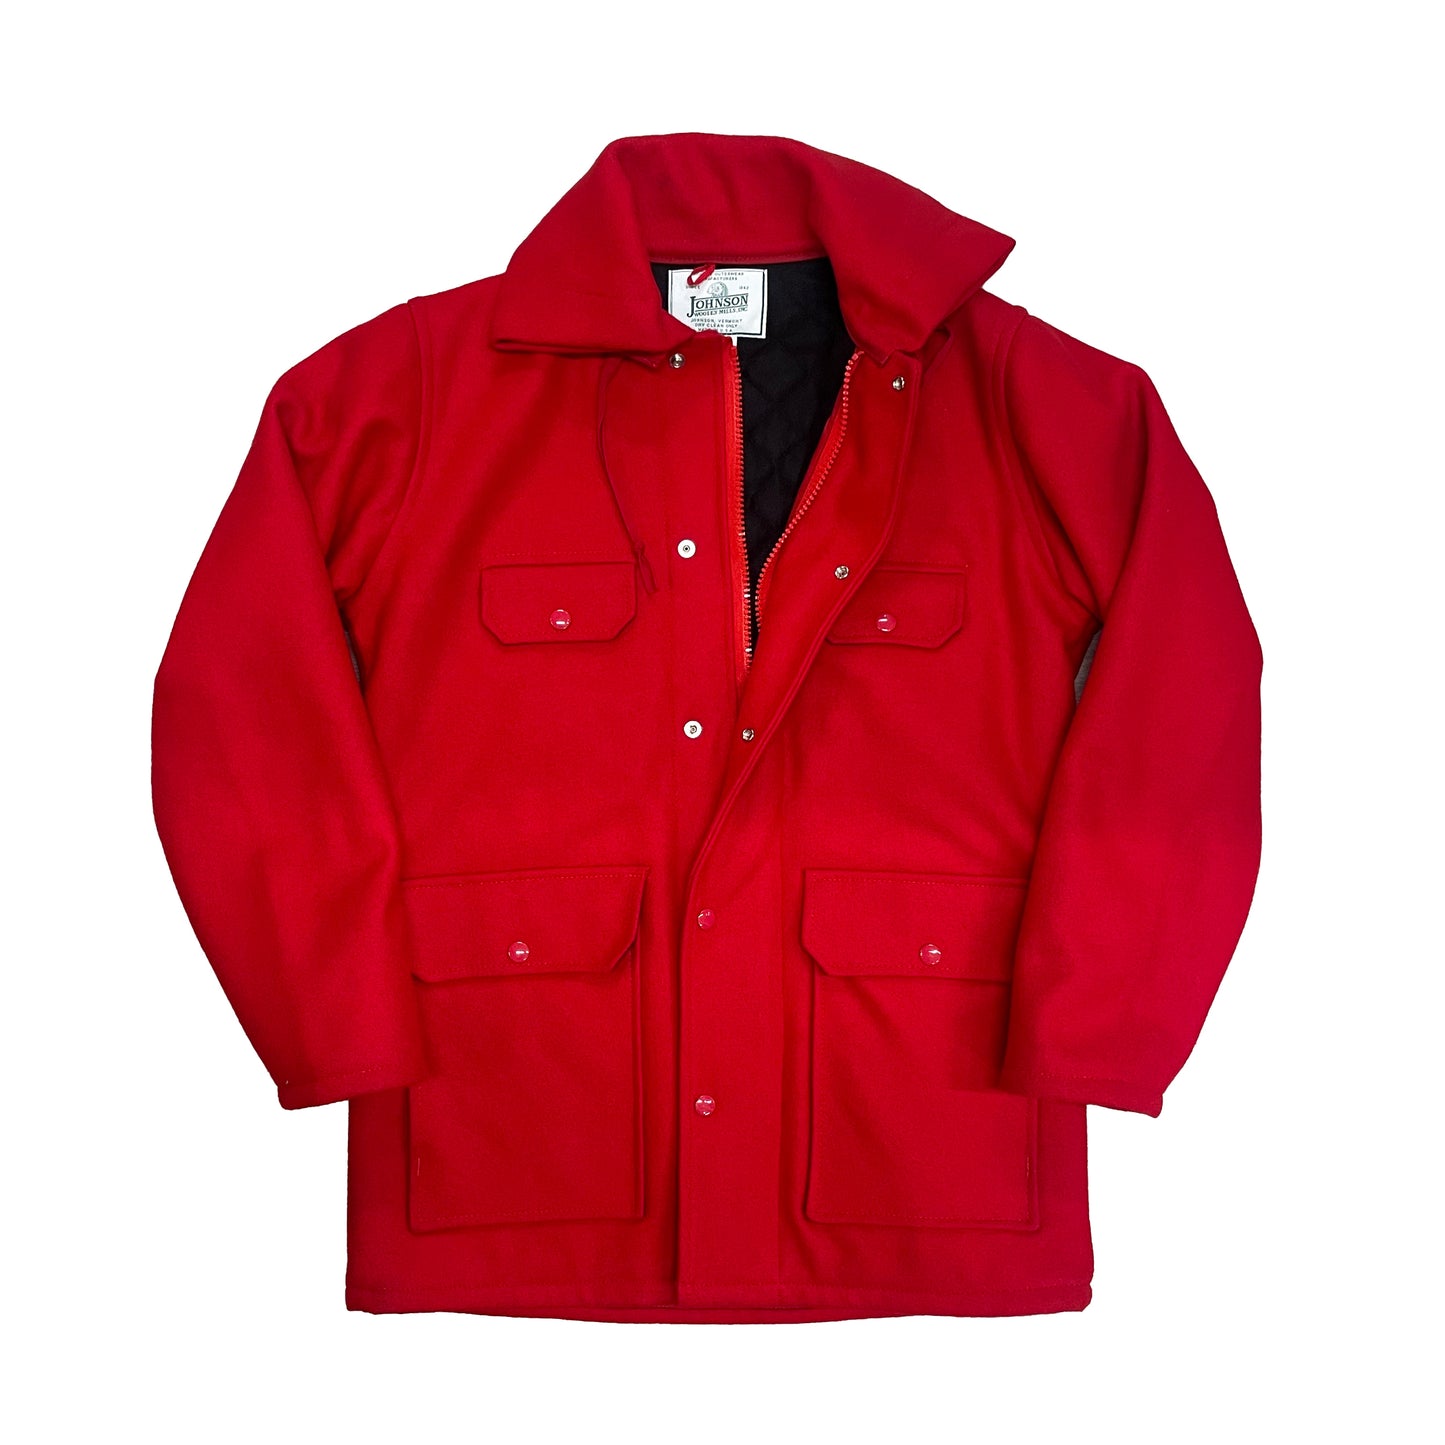 Johnson Woolen Mills Red outdoor wool coat